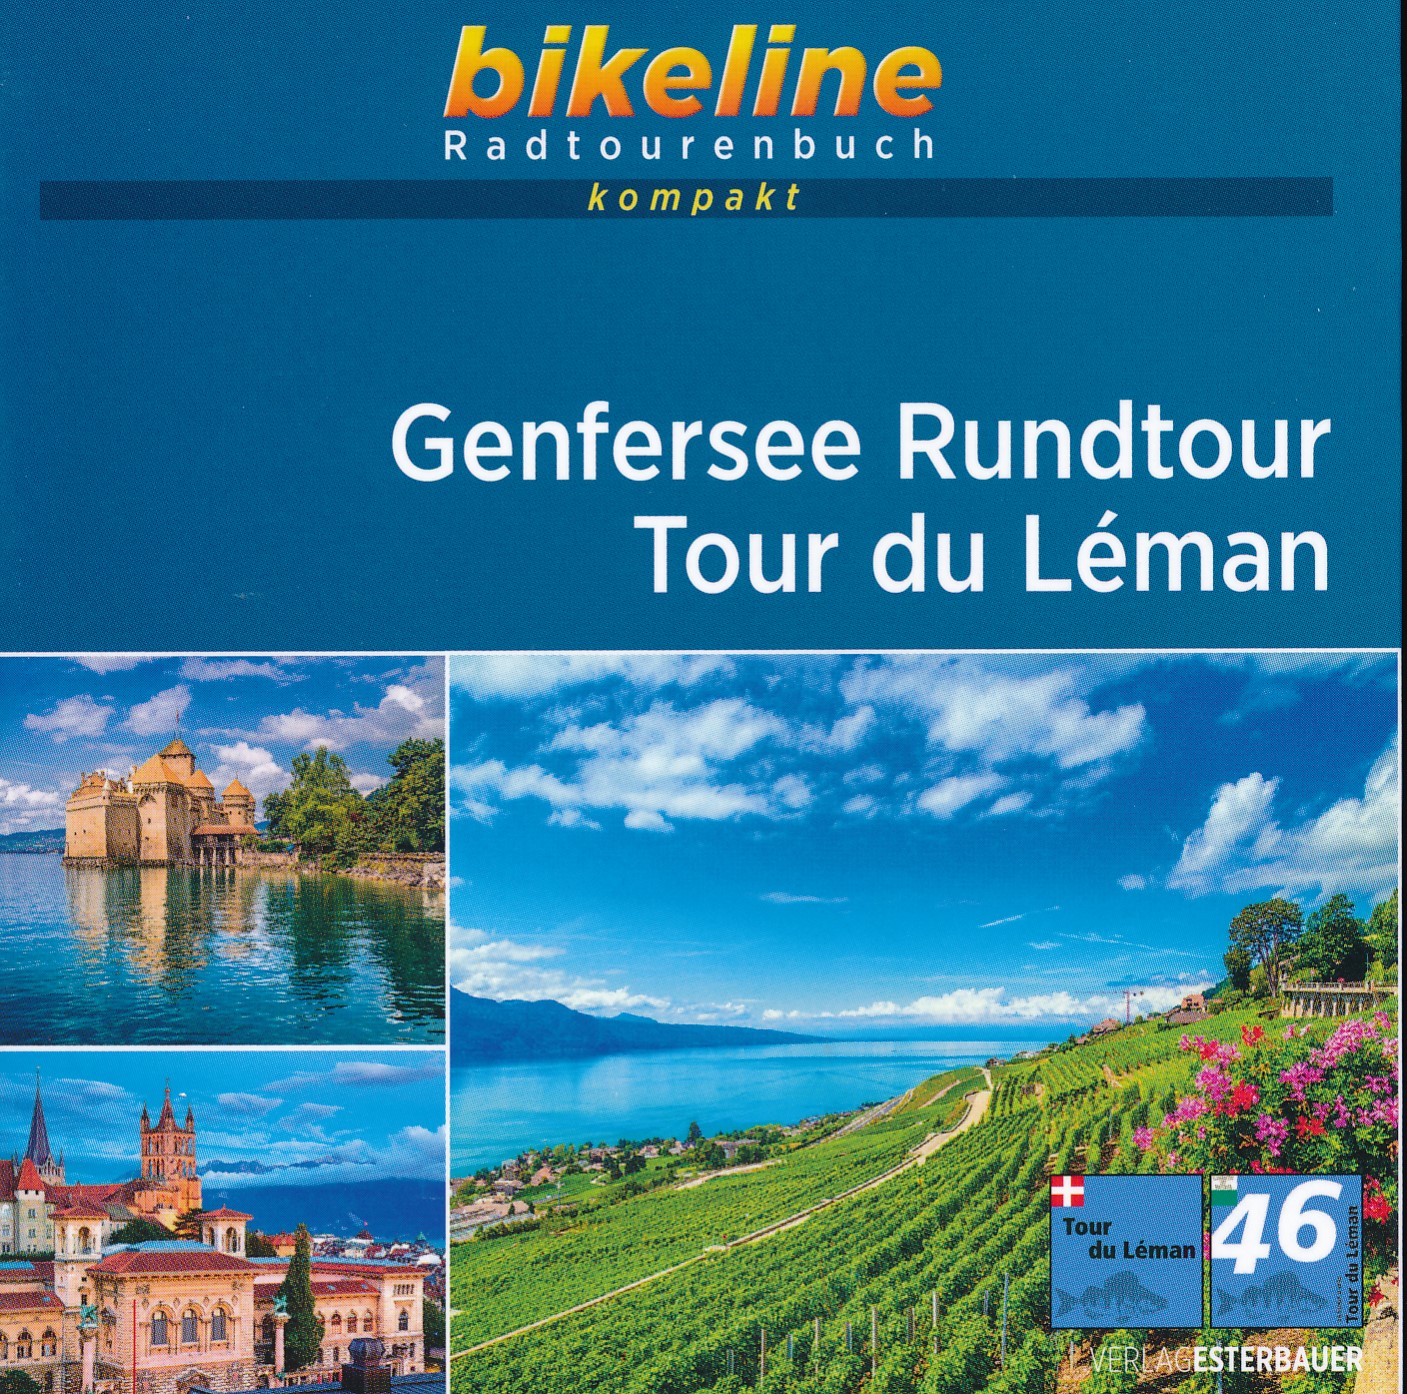 Online bestellen: Fietsgids Bikeline Radtourenbuch kompakt Genfersee Rundtour - Tour du Leman - Meer van Geneve | Esterbauer